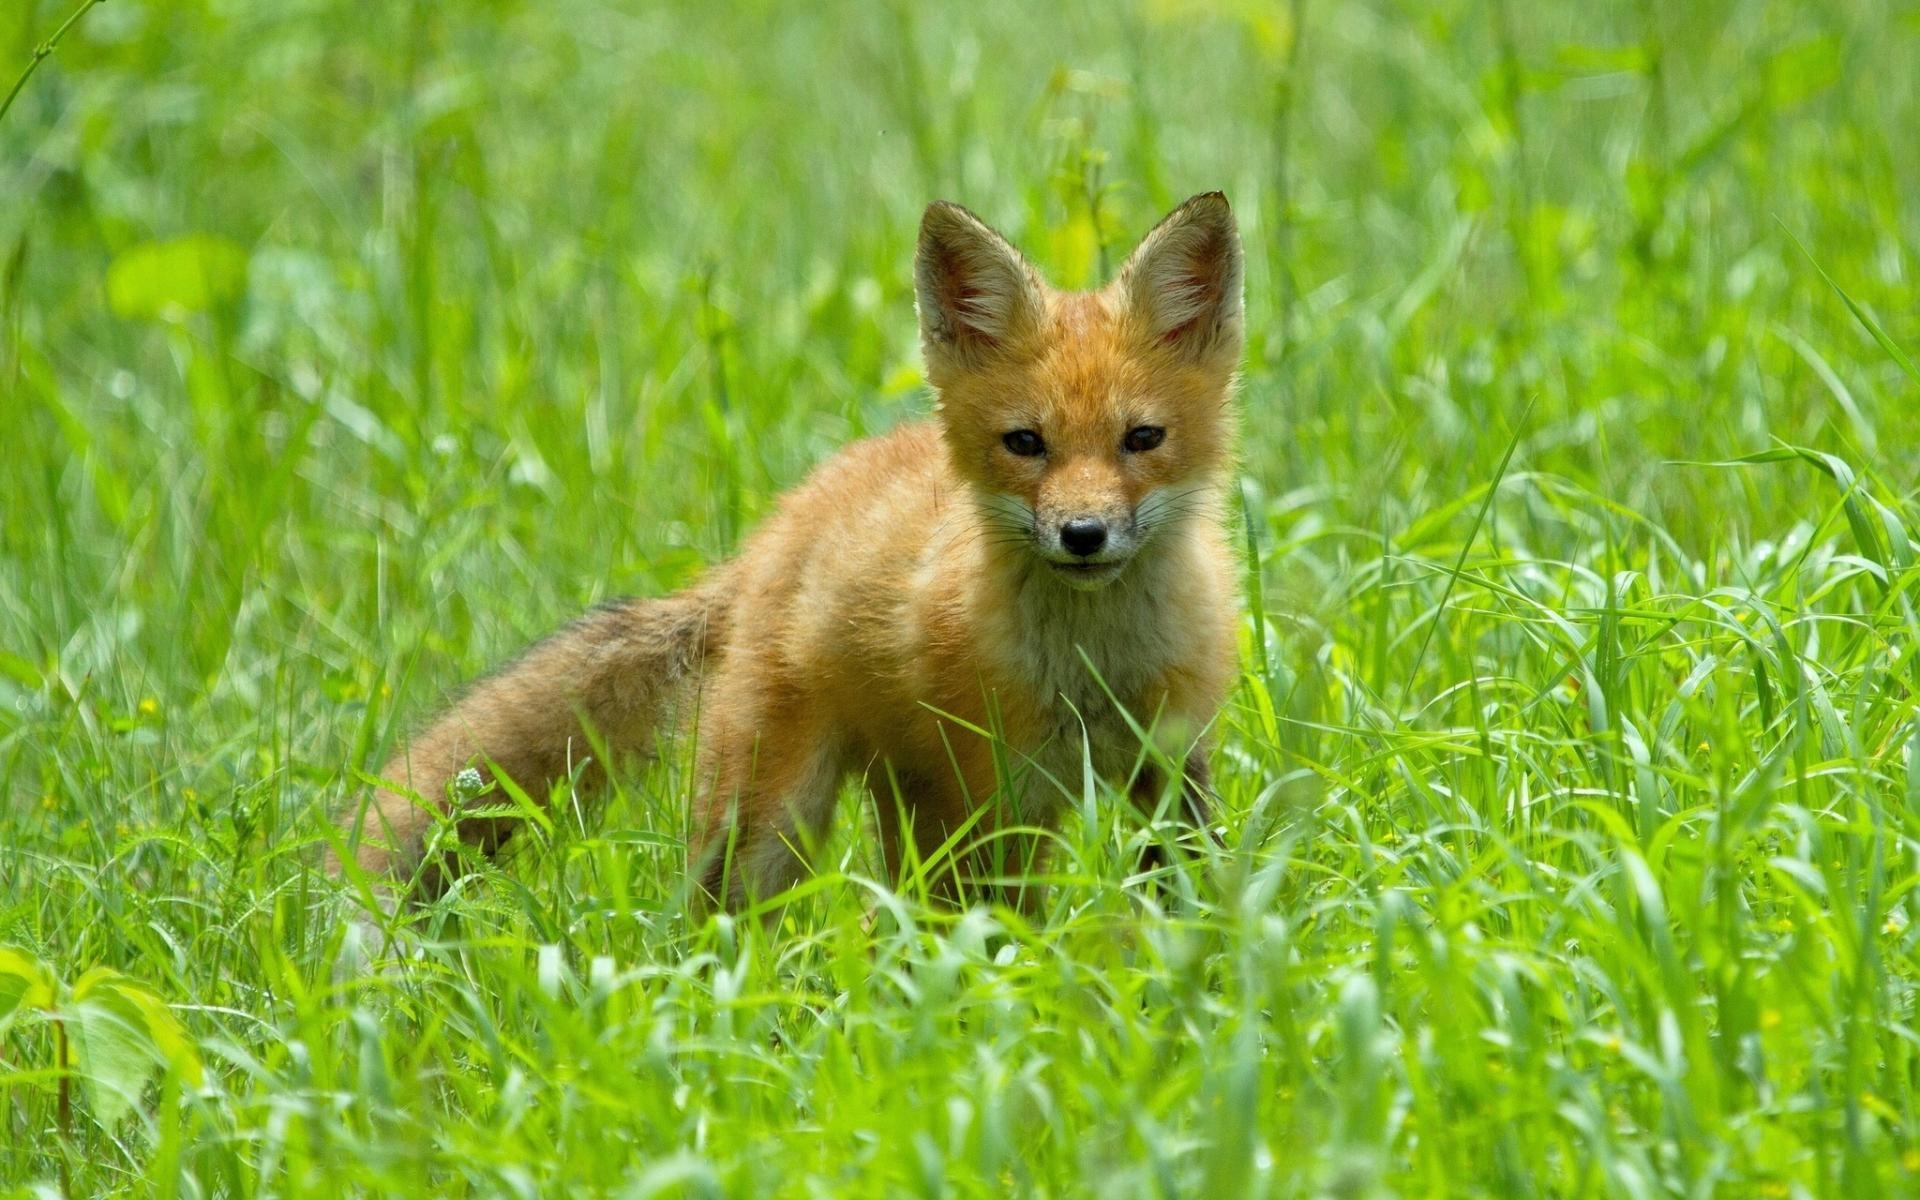 可爱的狐狸幼崽高清壁纸800x600分辨率下载,可爱的狐狸幼崽高清壁纸,